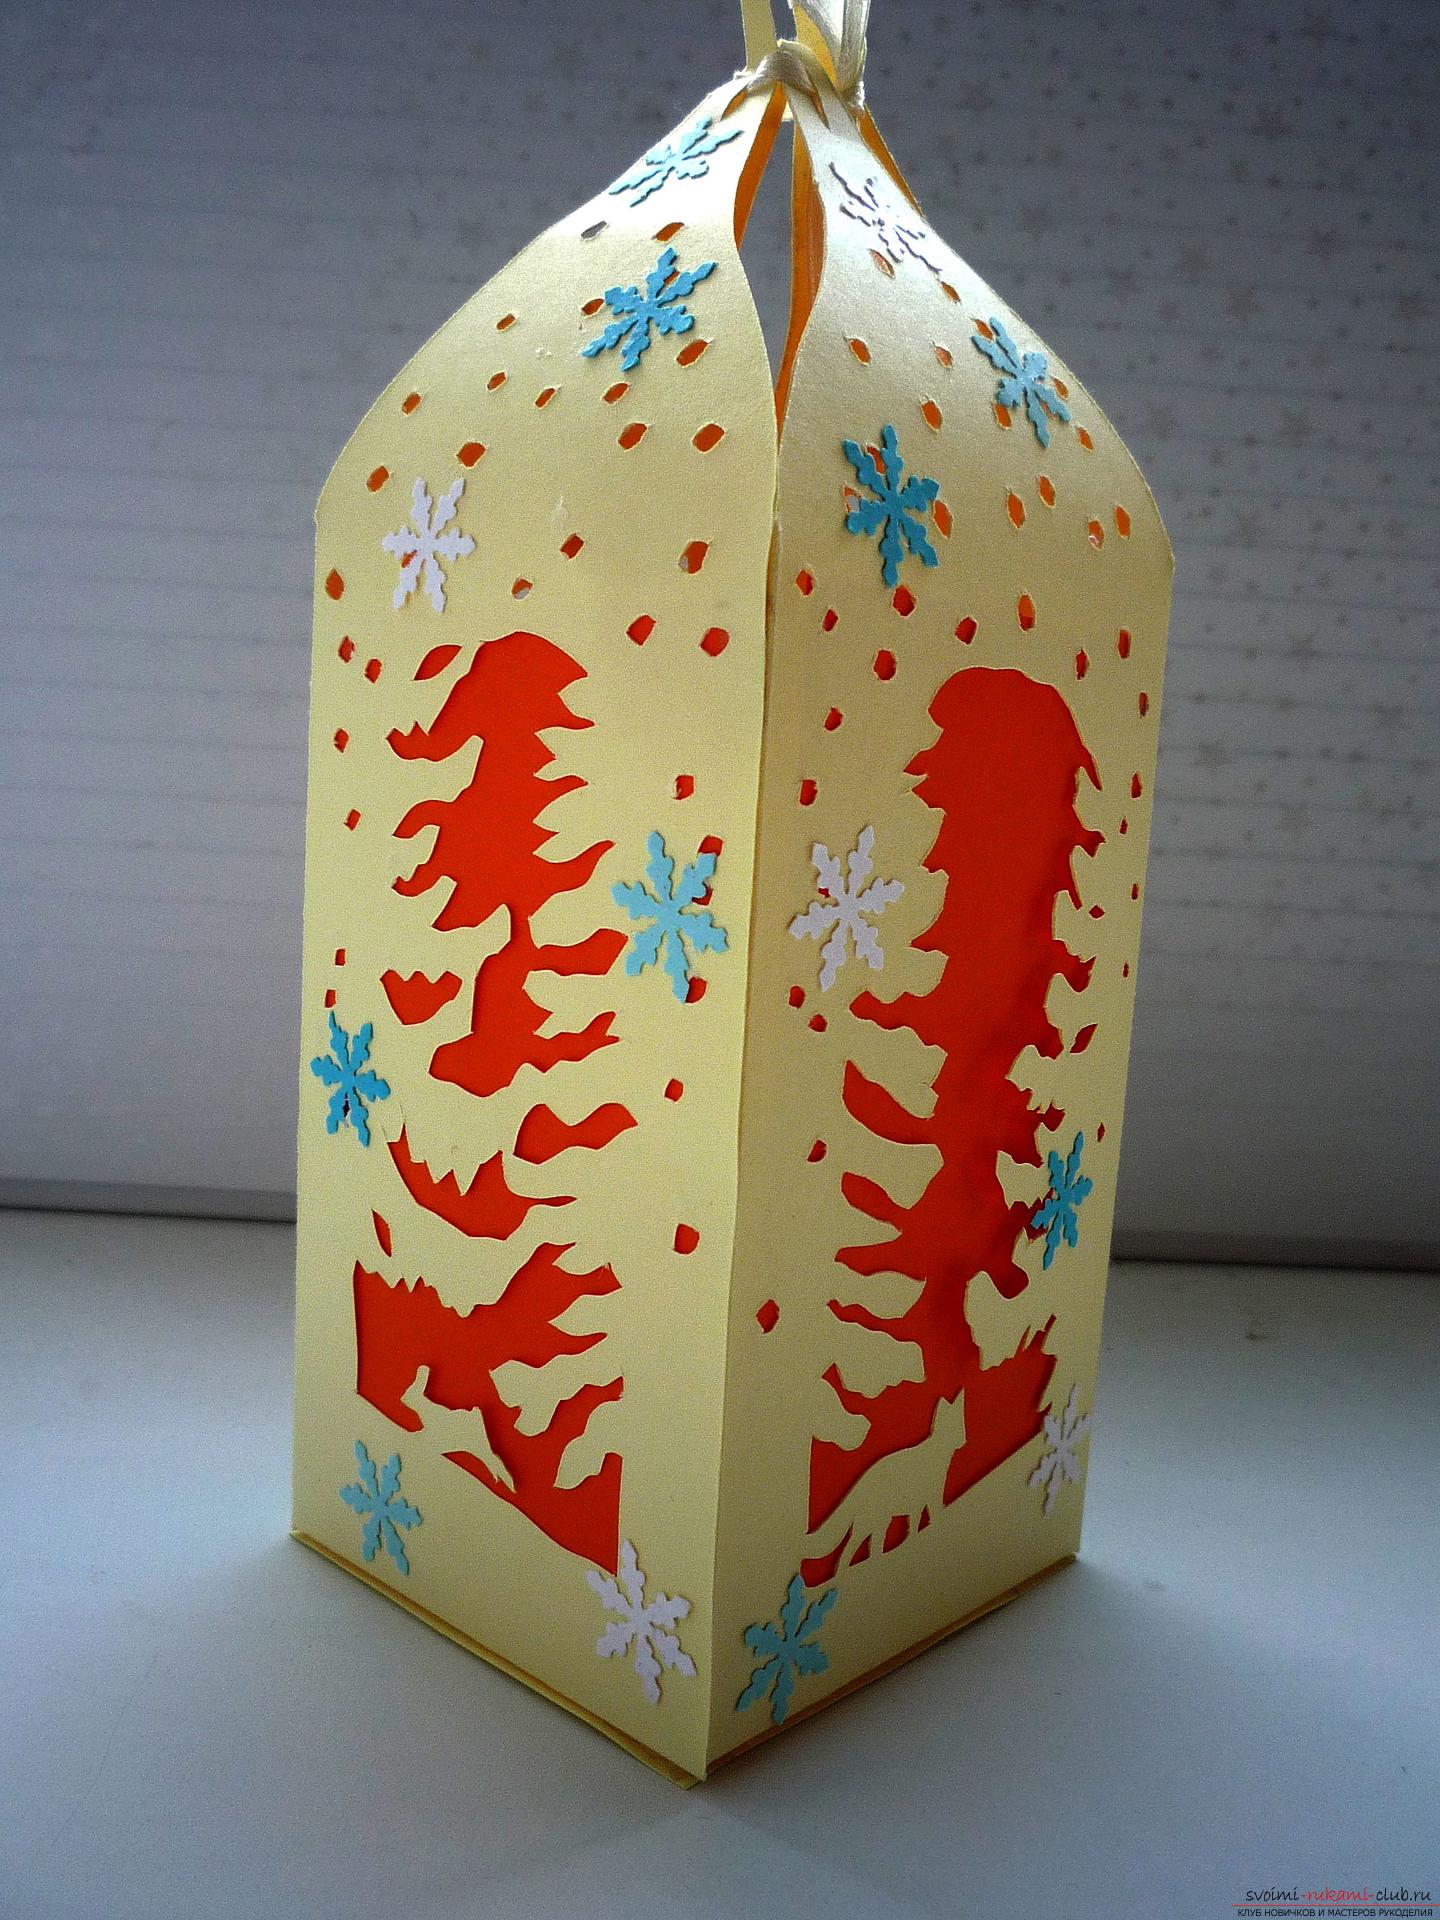 Мастер-класс научит как сделать новогоднюю поделку - коробку для сладкого подарка Зимний фонарь